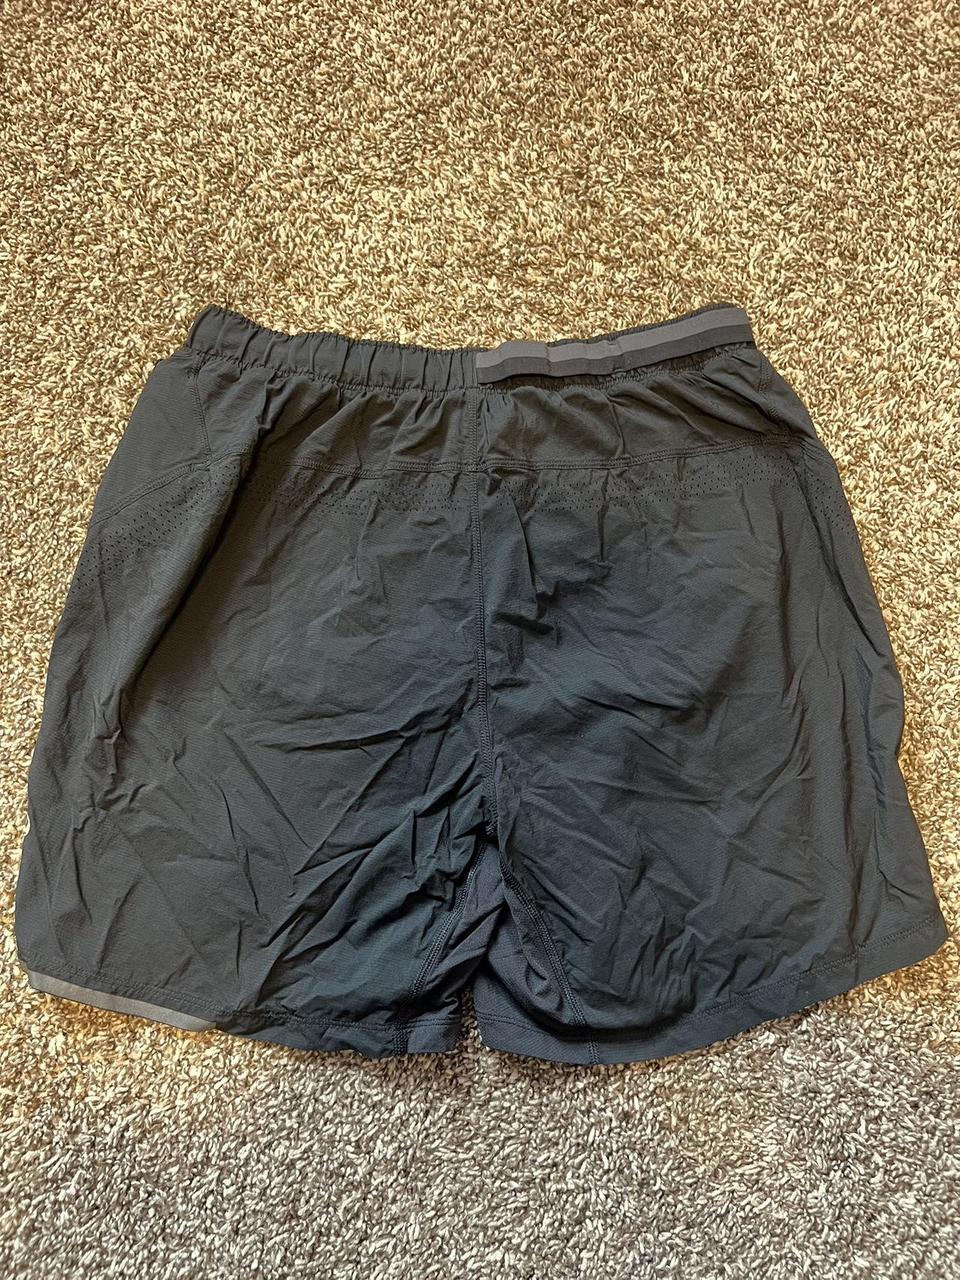 Men’s Lululemon Vintage lined Trainging Shorts Size... - Depop